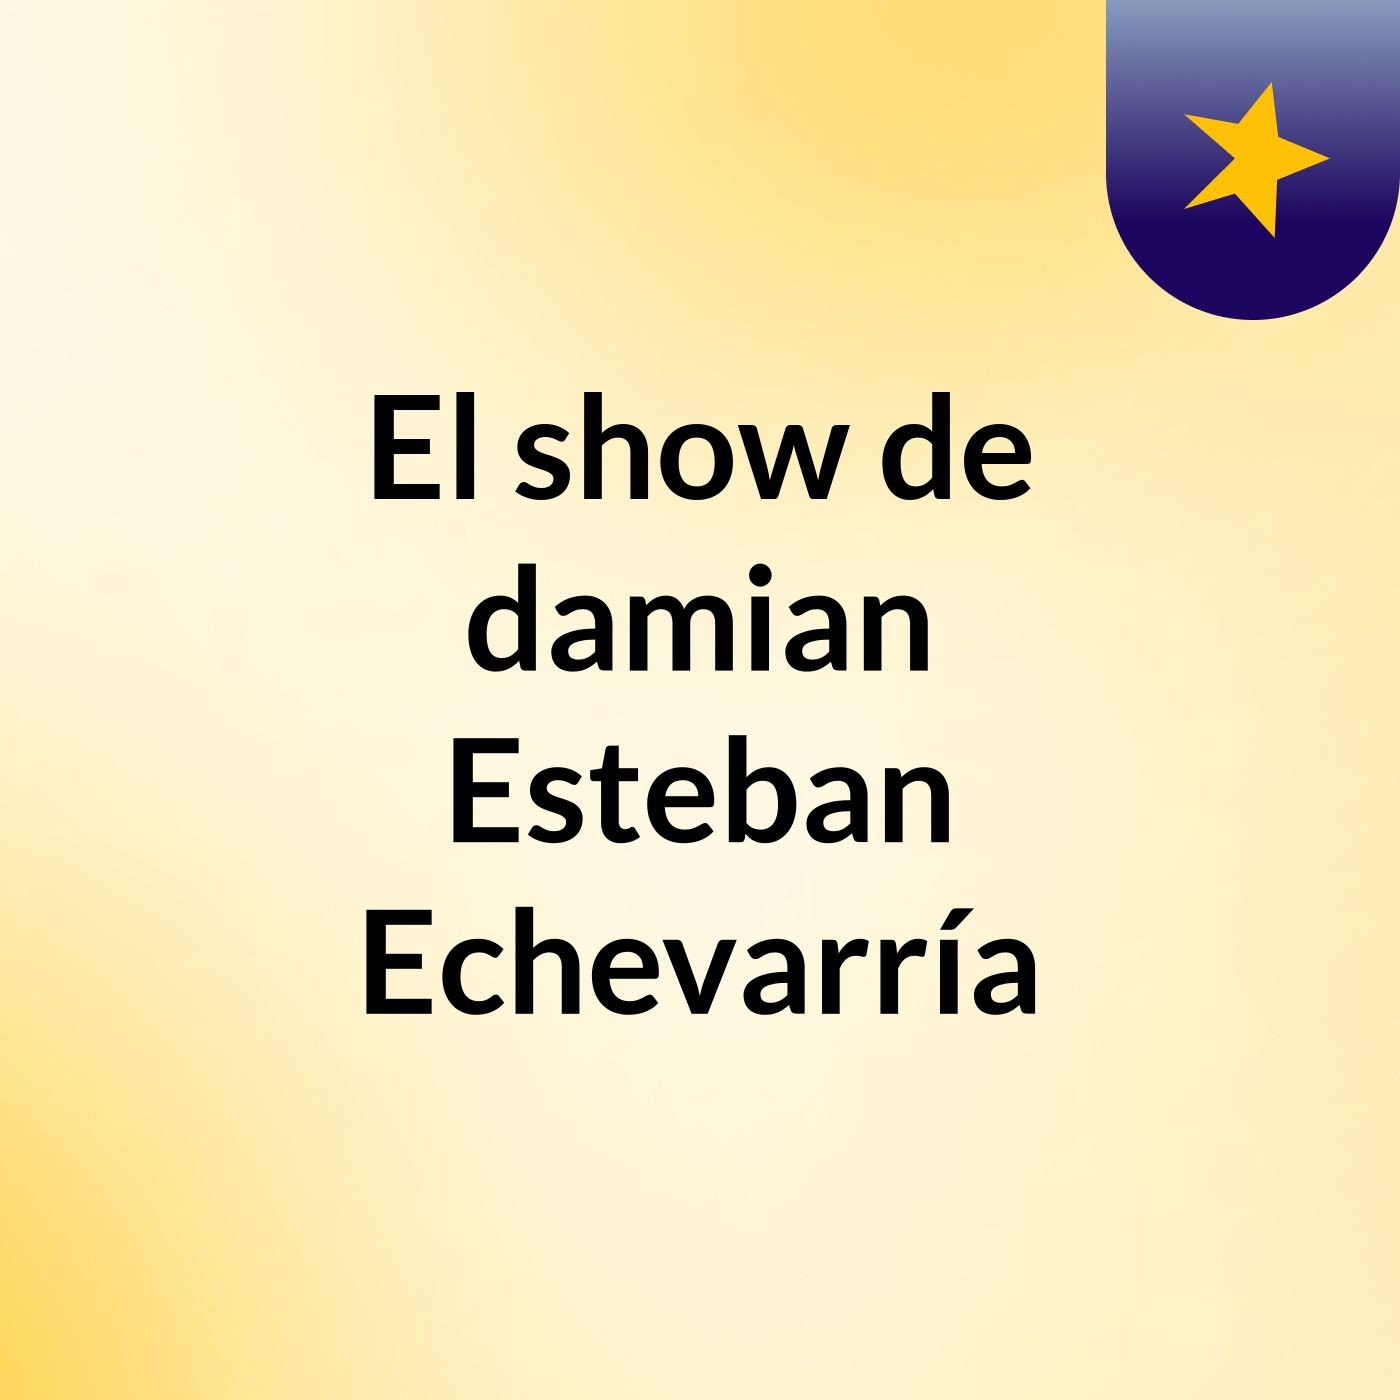 El show de damian Esteban Echevarría